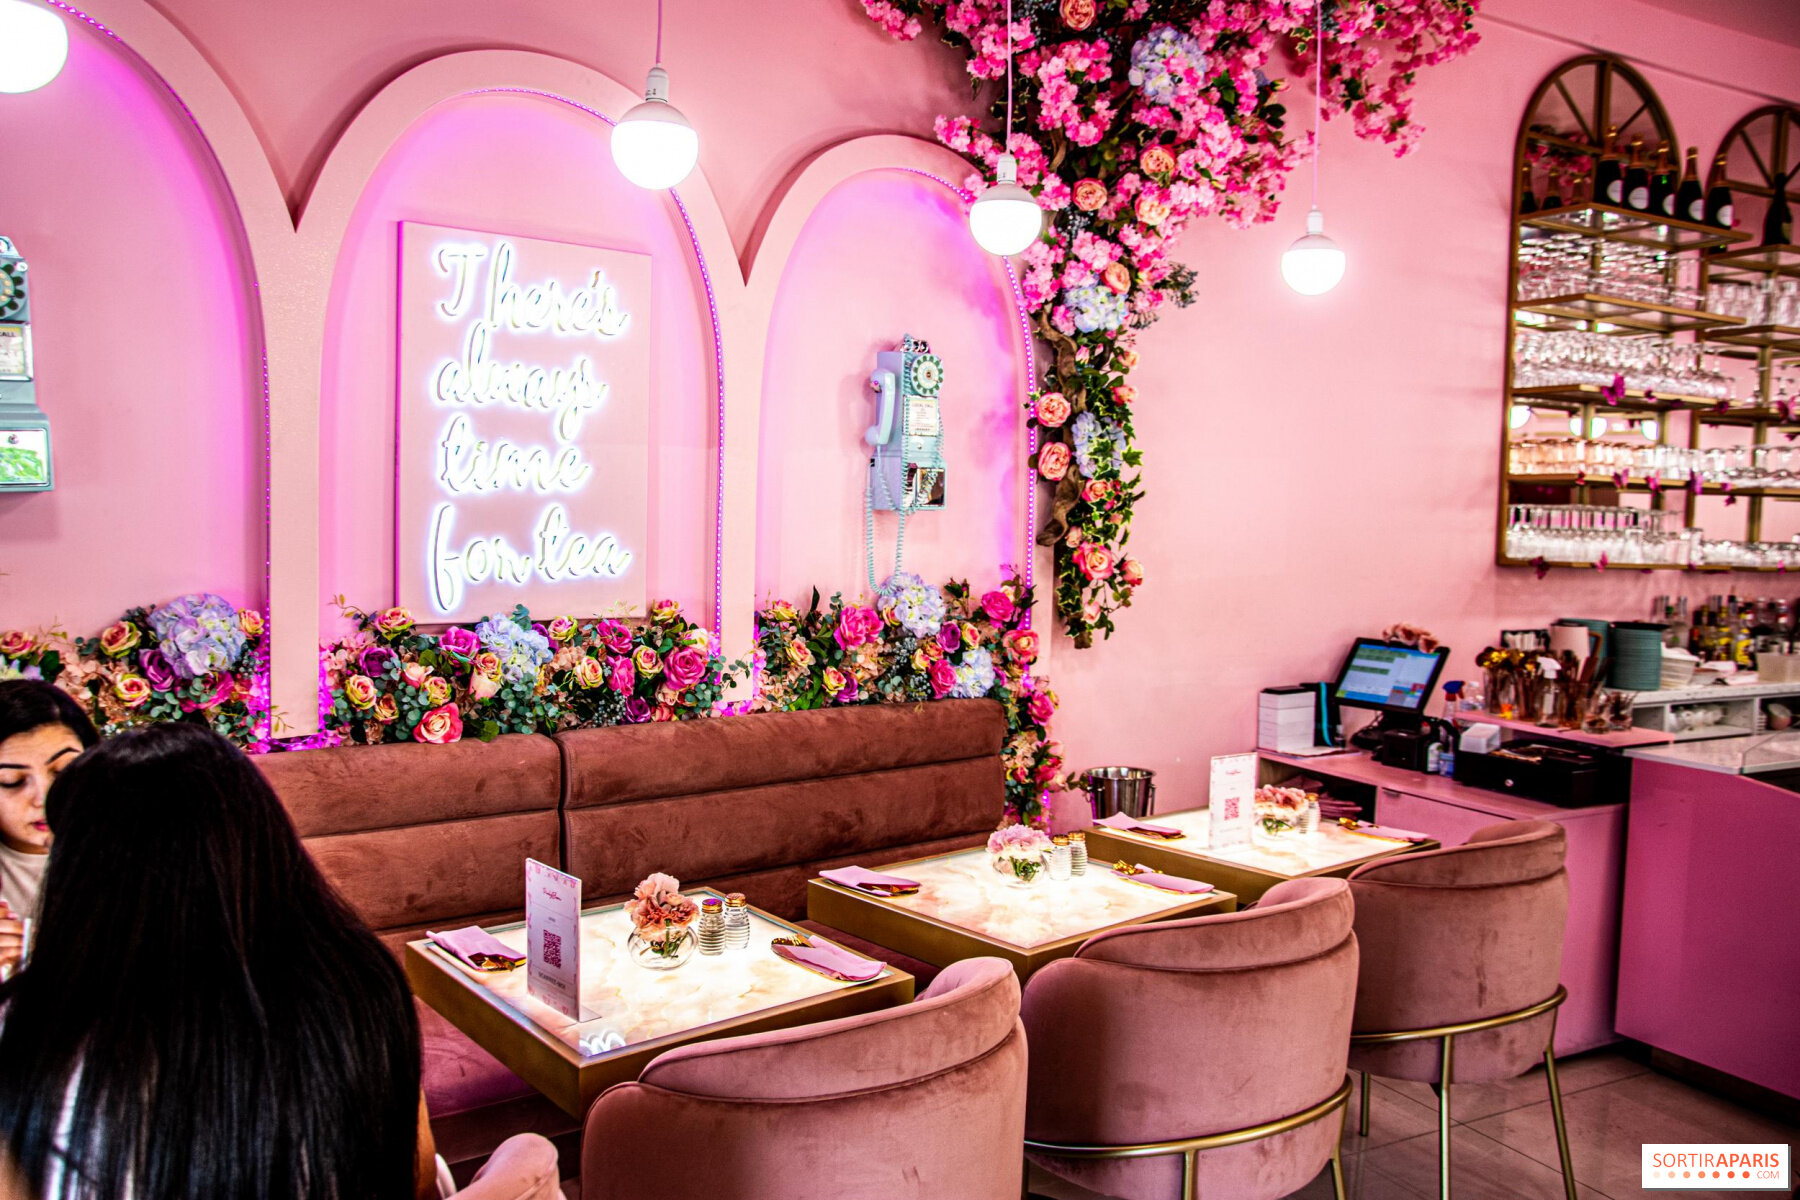 Pinky bloom restaurant velvet seating area